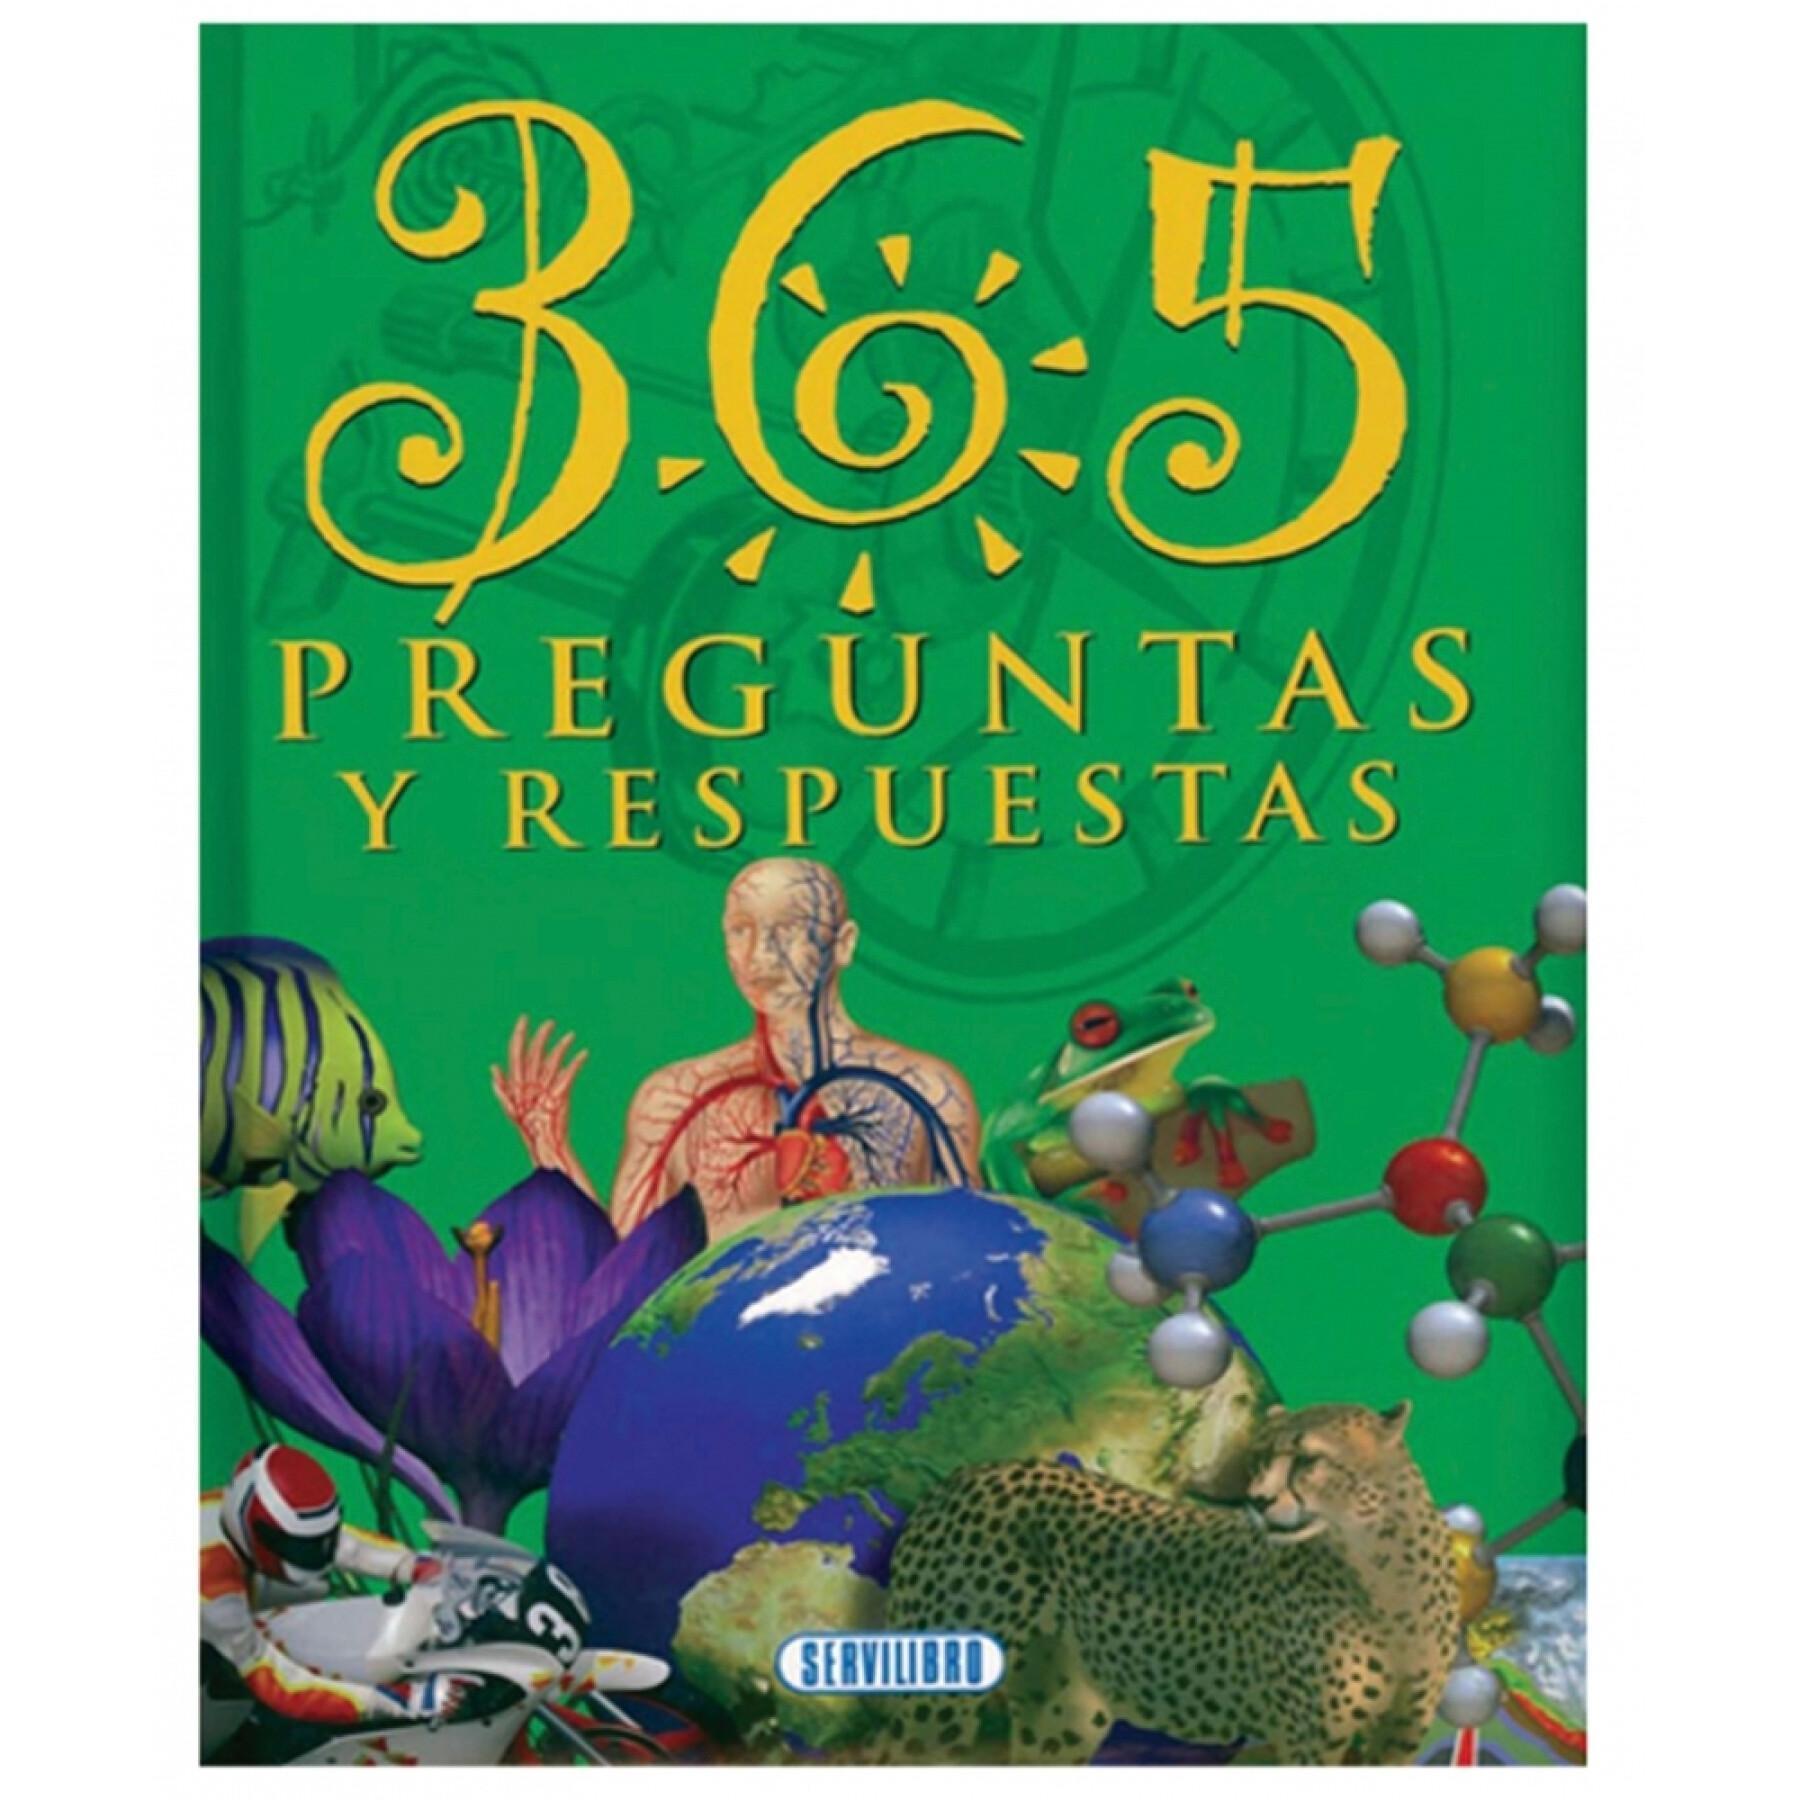 Książka na 365 pytań i odpowiedzi Servilibro Ediciones